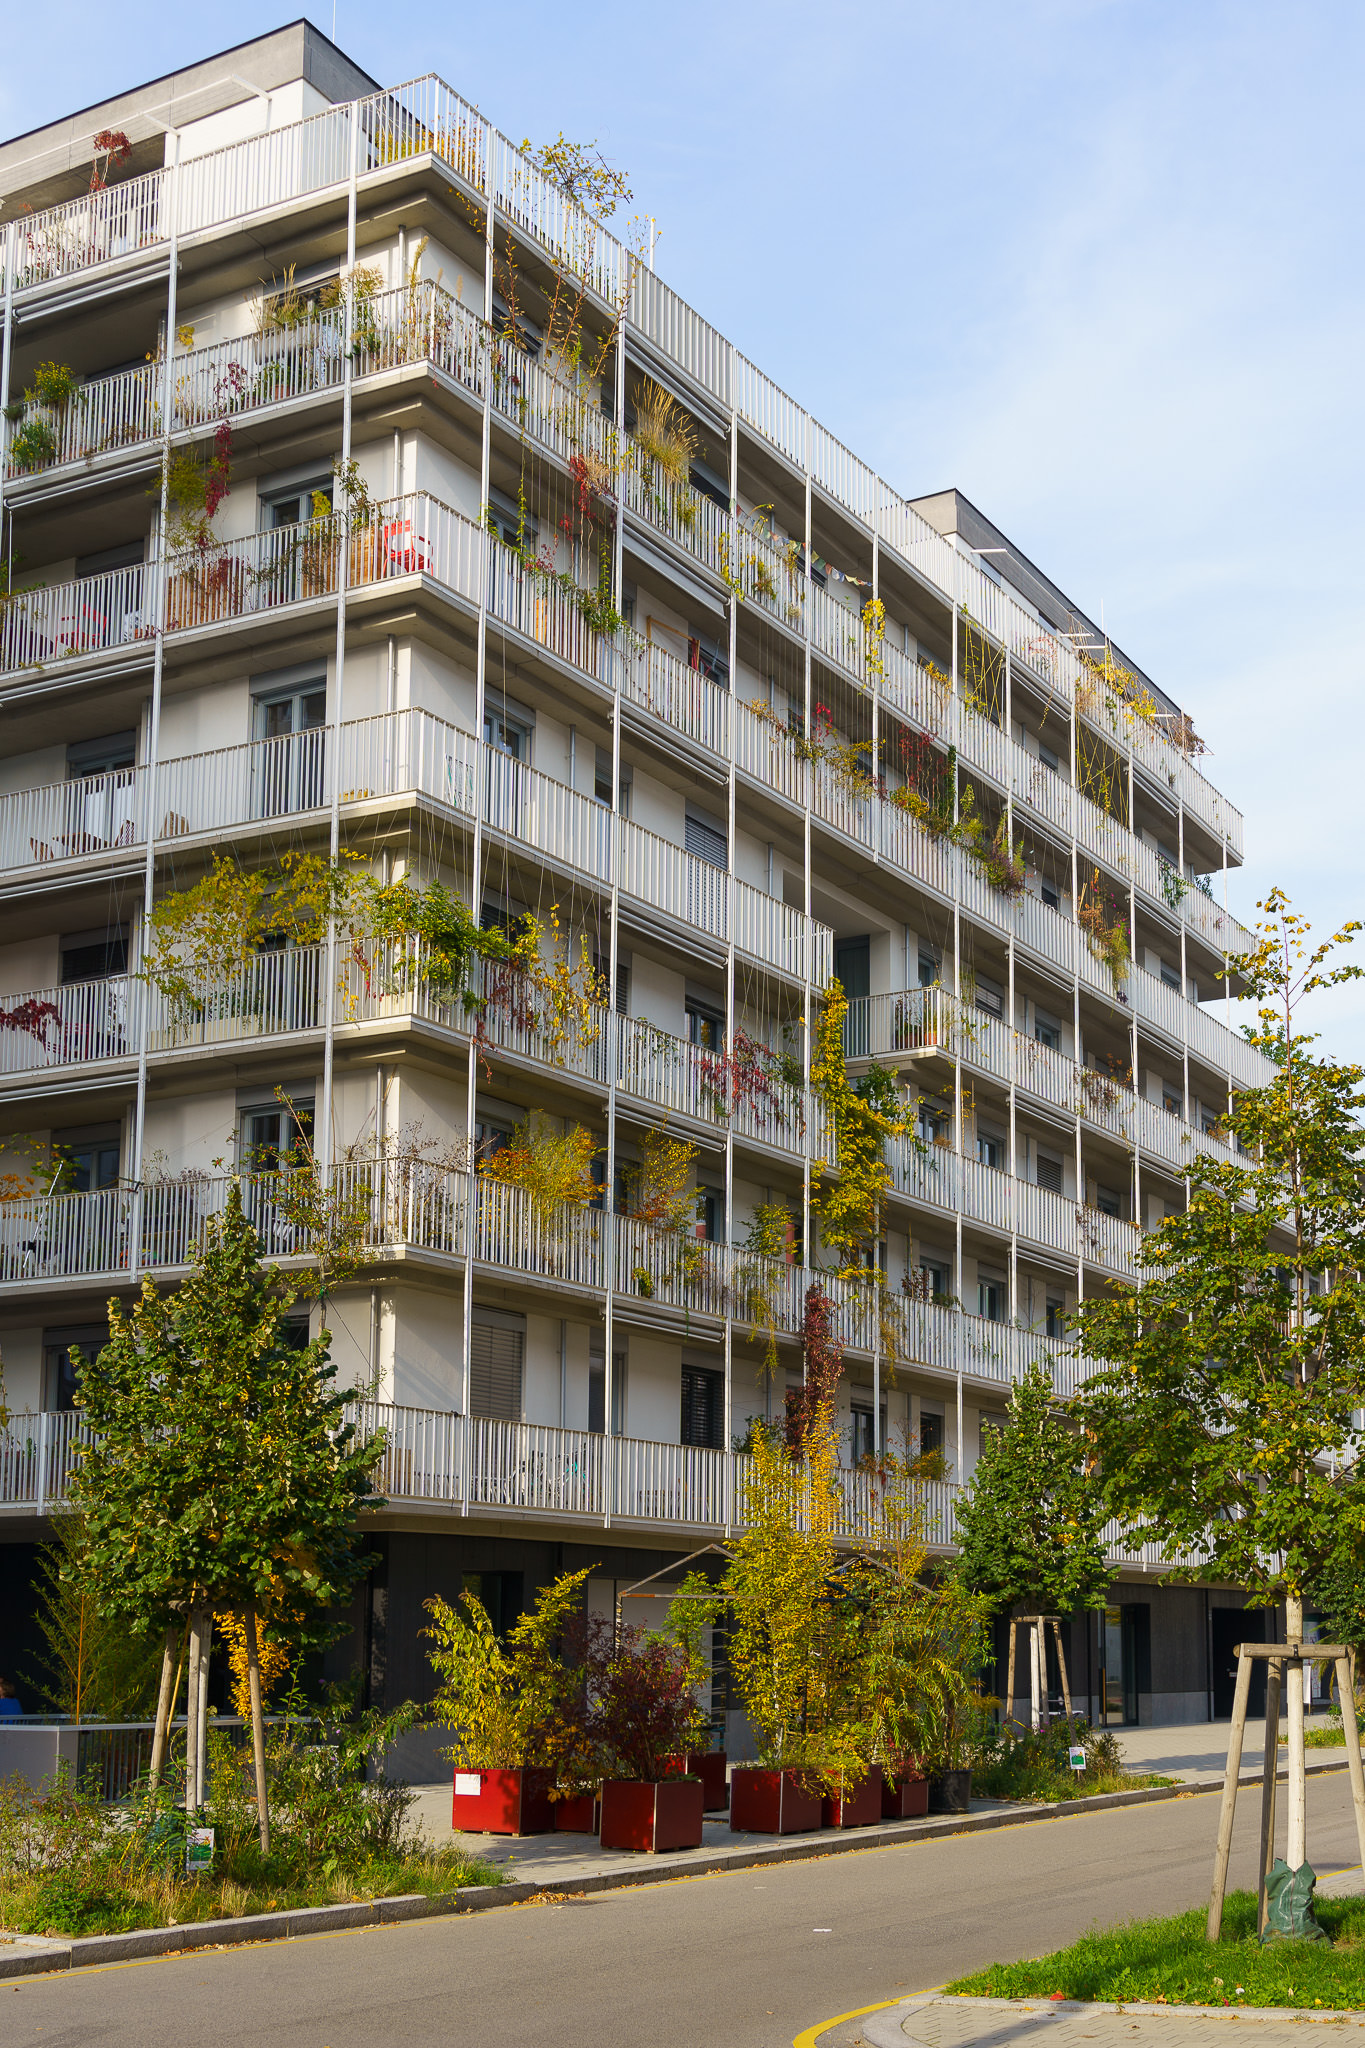 "Grätzl im Wandel" - The last building plots take shape around Freie Mitte at Nordbahnhof Vienna